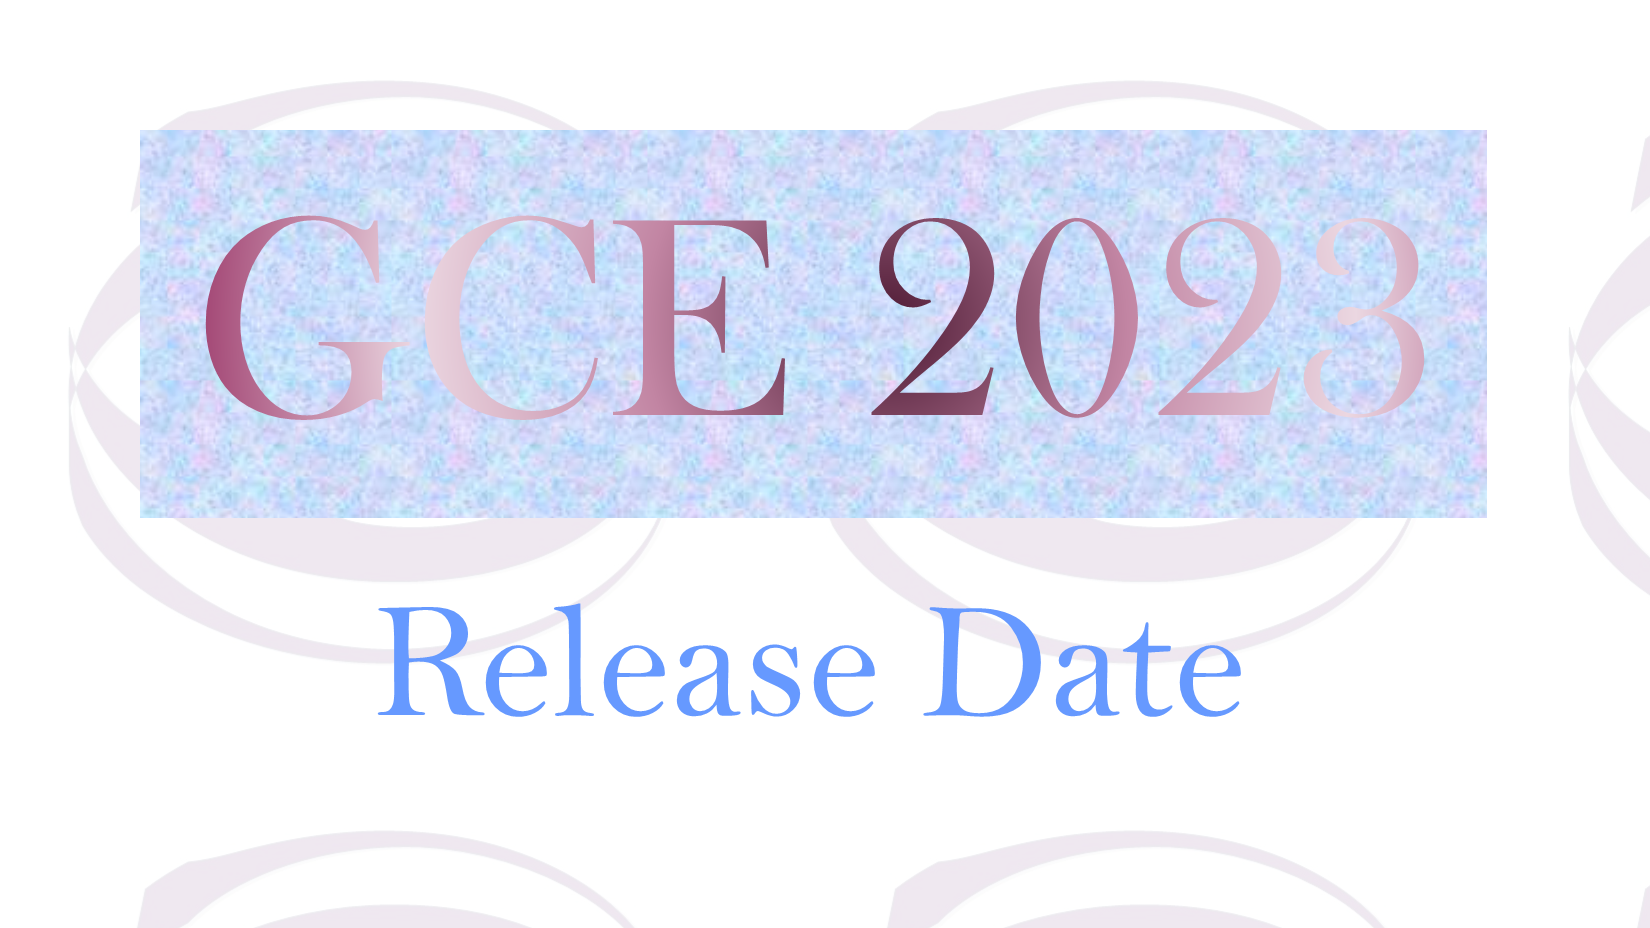 GCE 2023 RELEASE DATE